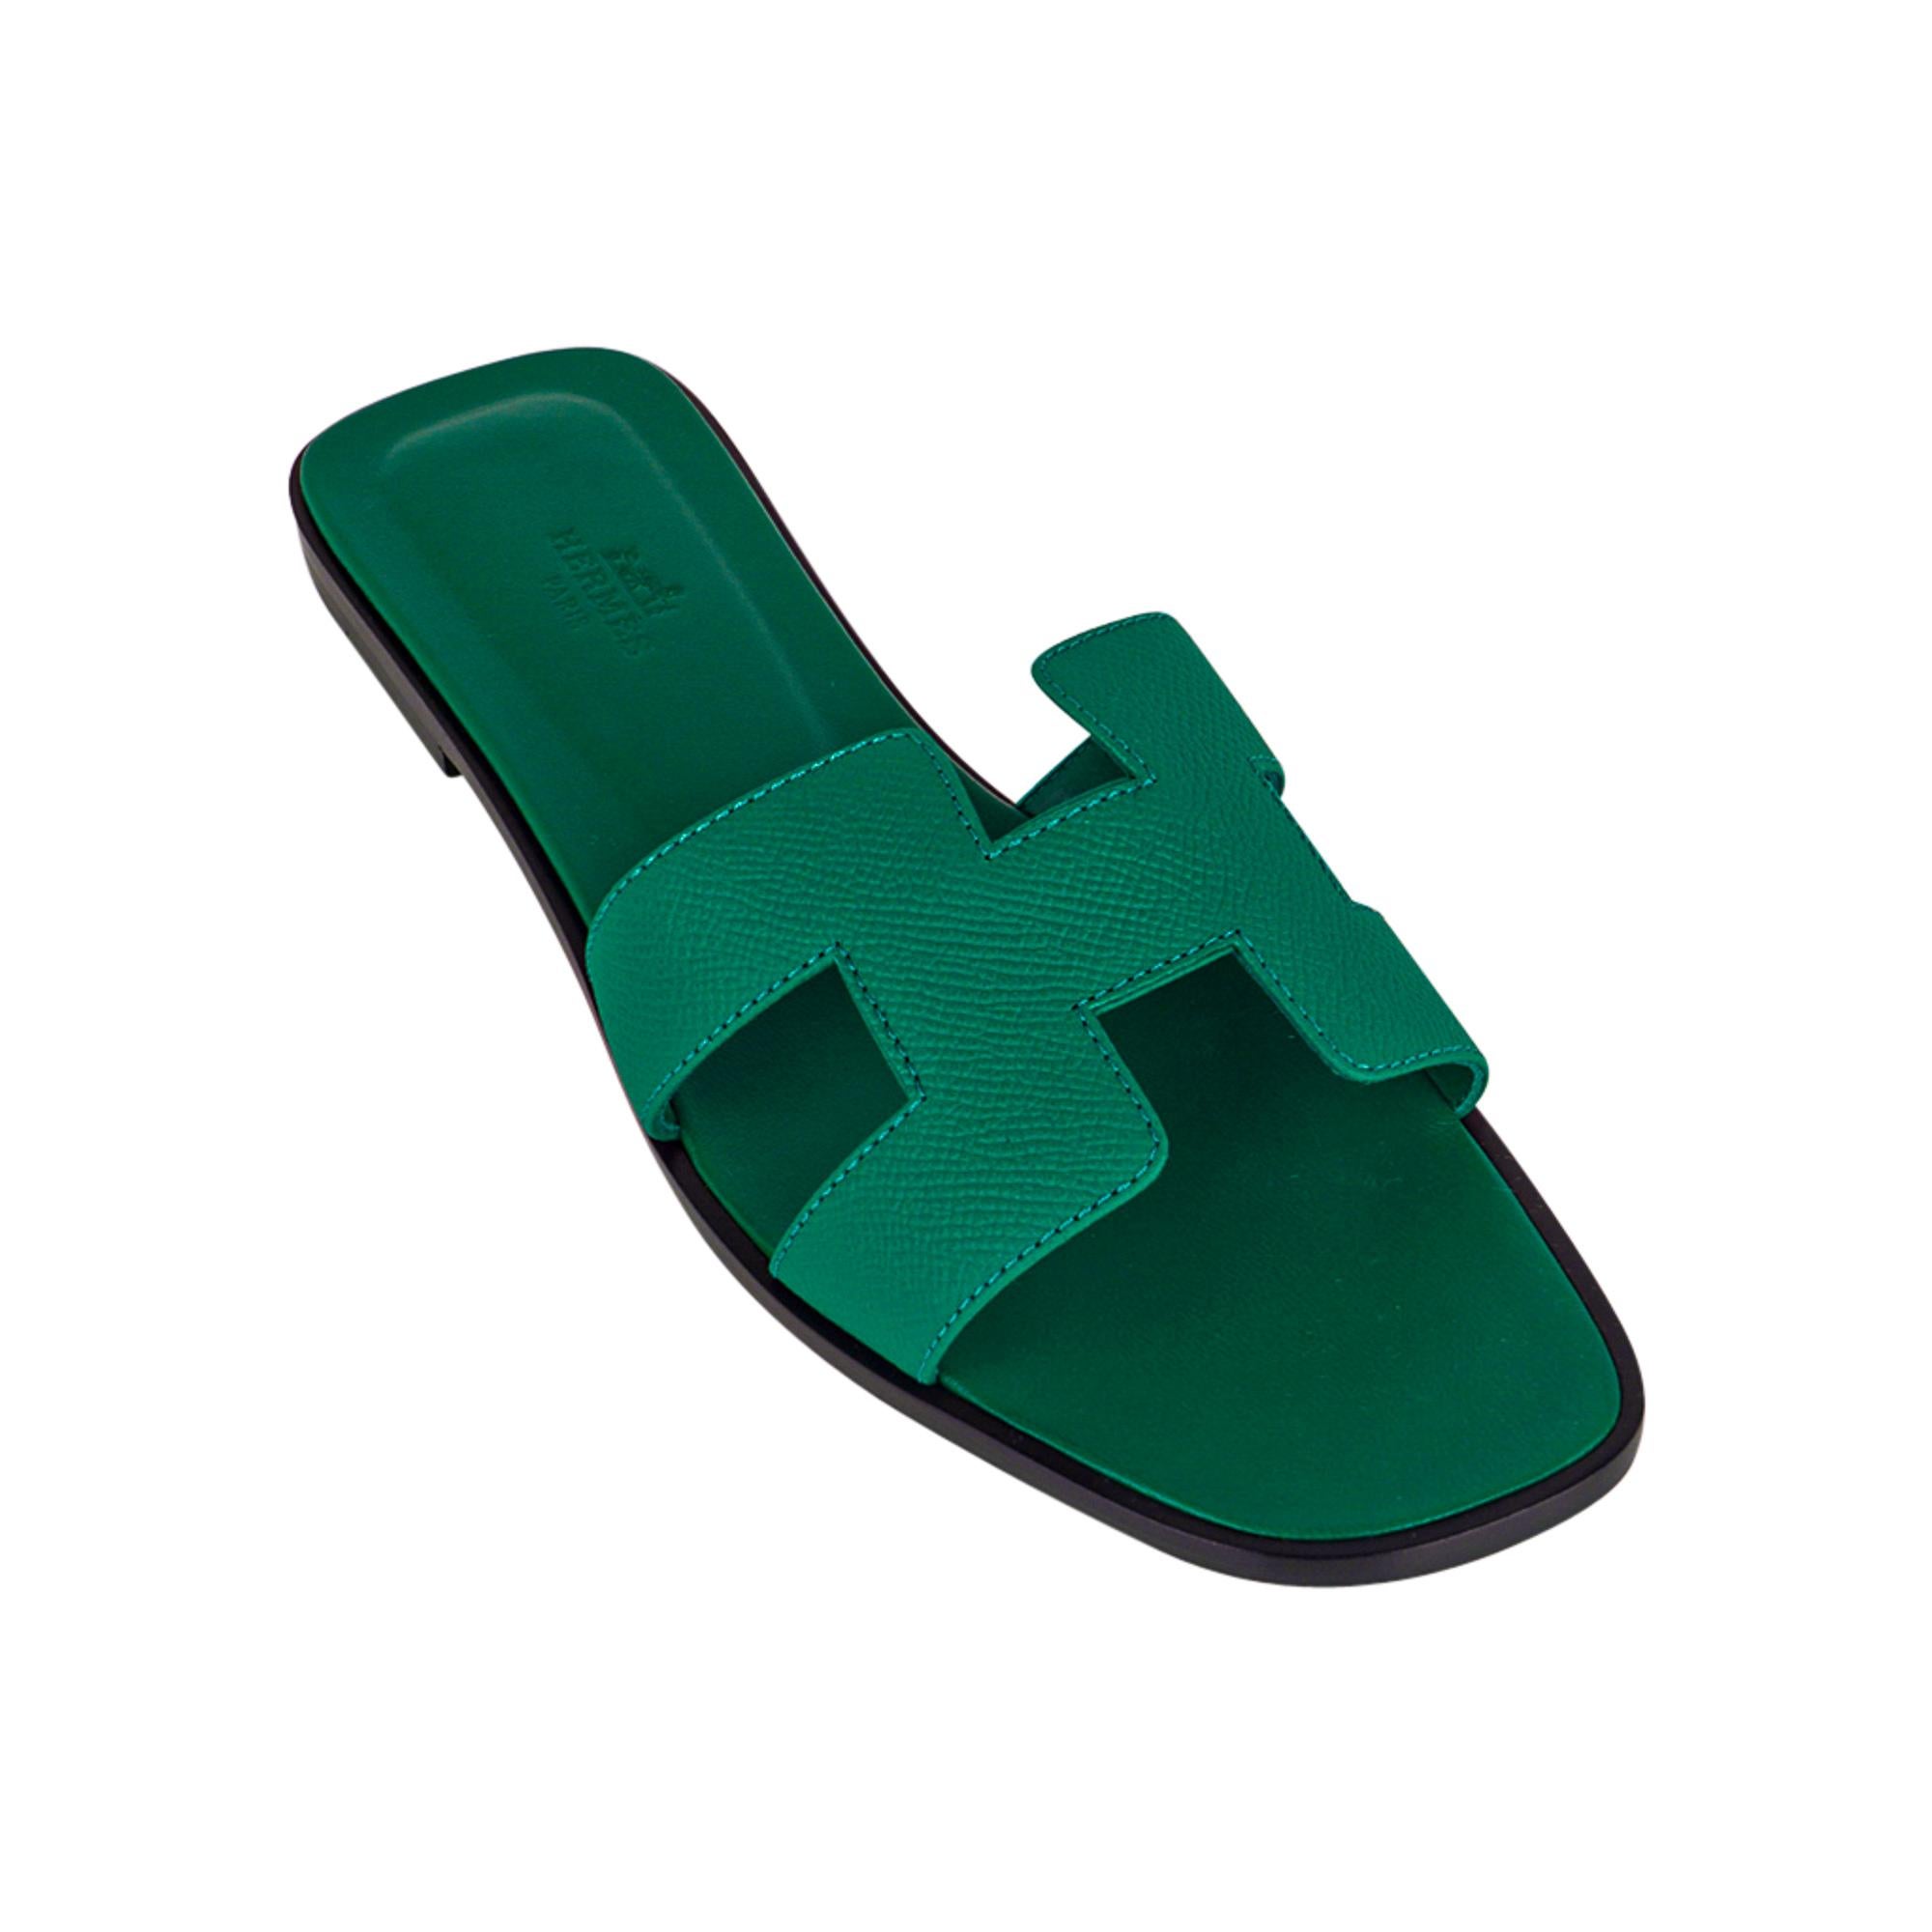 Mightychic propose des sandales Hermès Oran Emerald en édition limitée.
Cette superbe sandale plate en édition limitée Hermes Oran est fabriquée en cuir Epsom.
L'emblématique H découpé sur le dessus du pied.
Semelle intérieure en cuir de veau gaufré